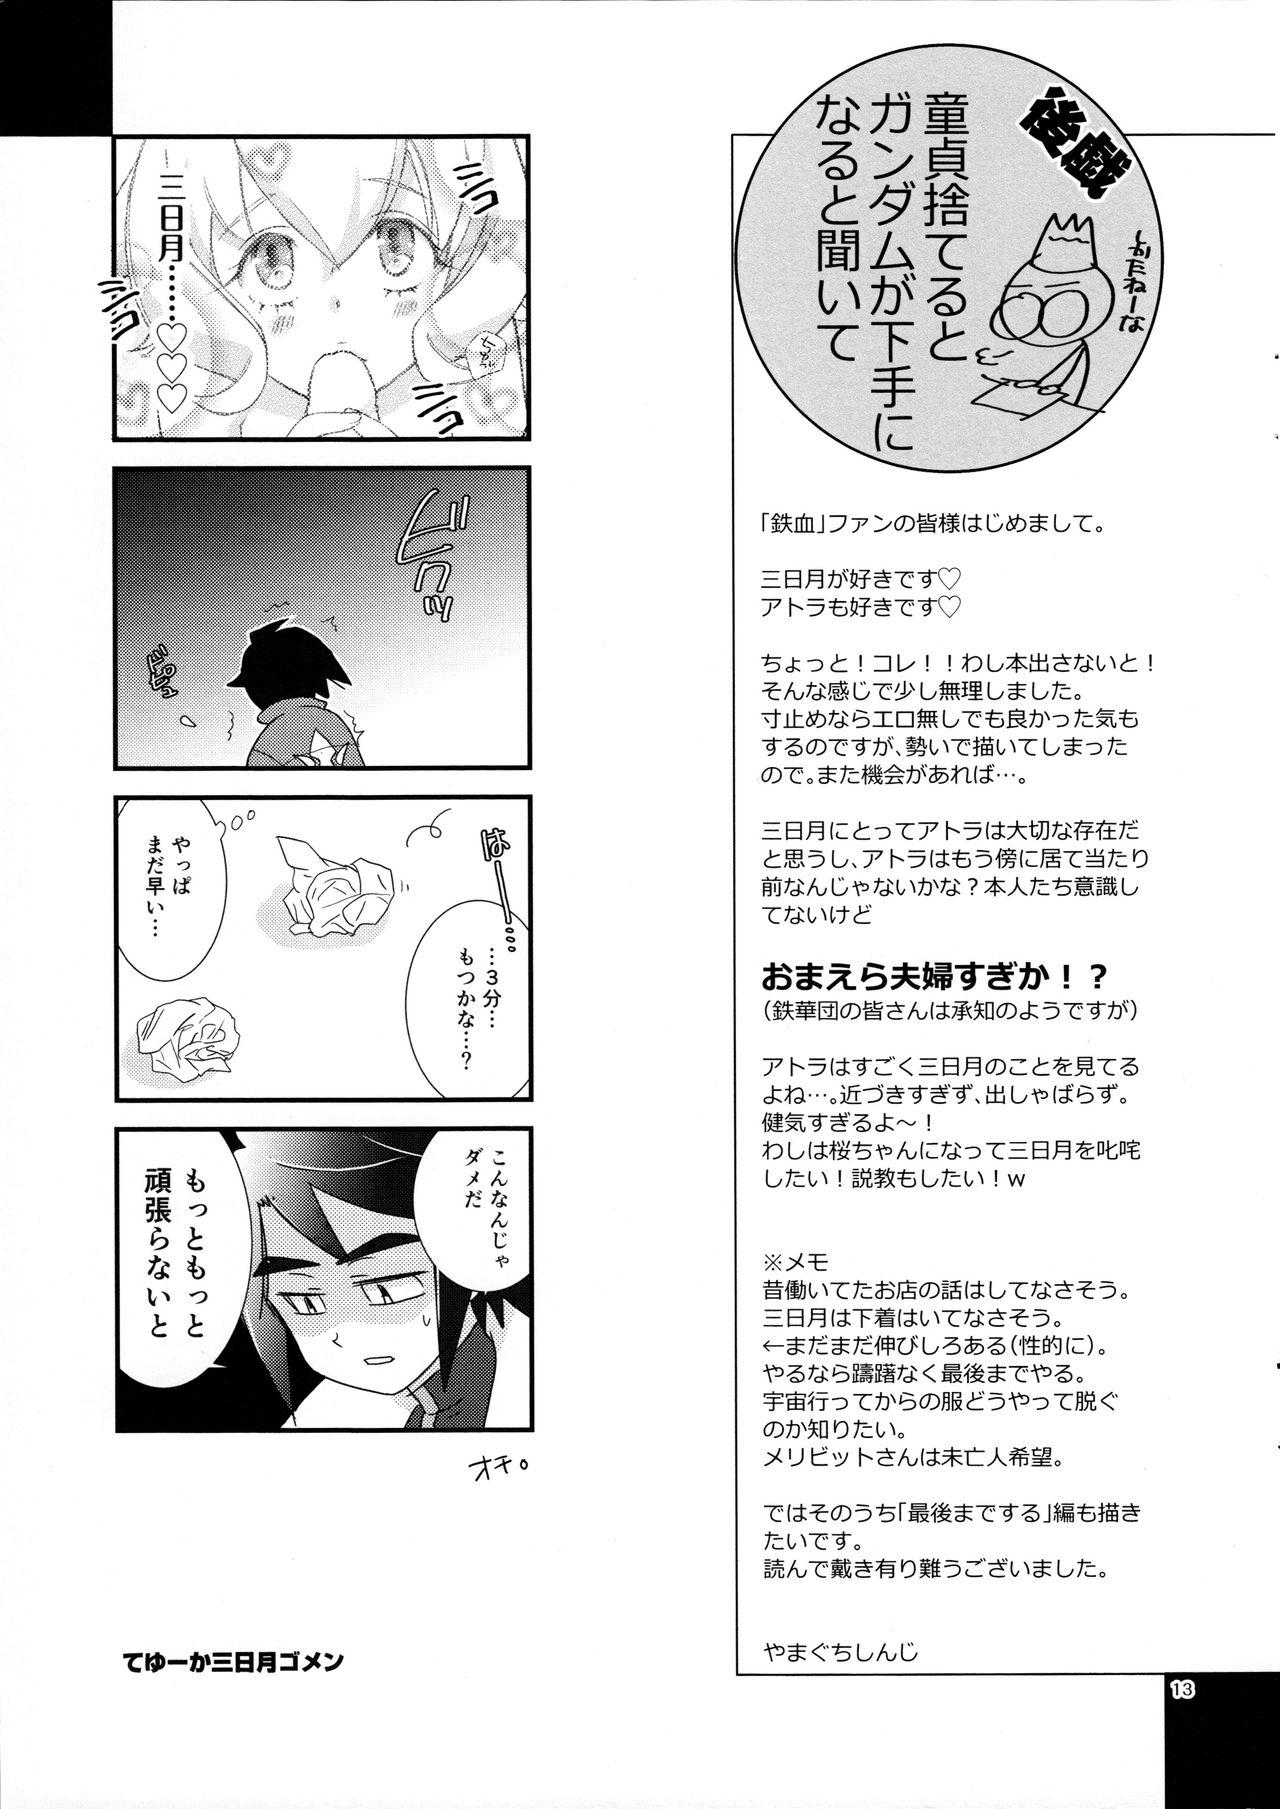 Body Mikazuki wa Itsumo Saigomade Shinai - Mobile suit gundam tekketsu no orphans Flaca - Page 12